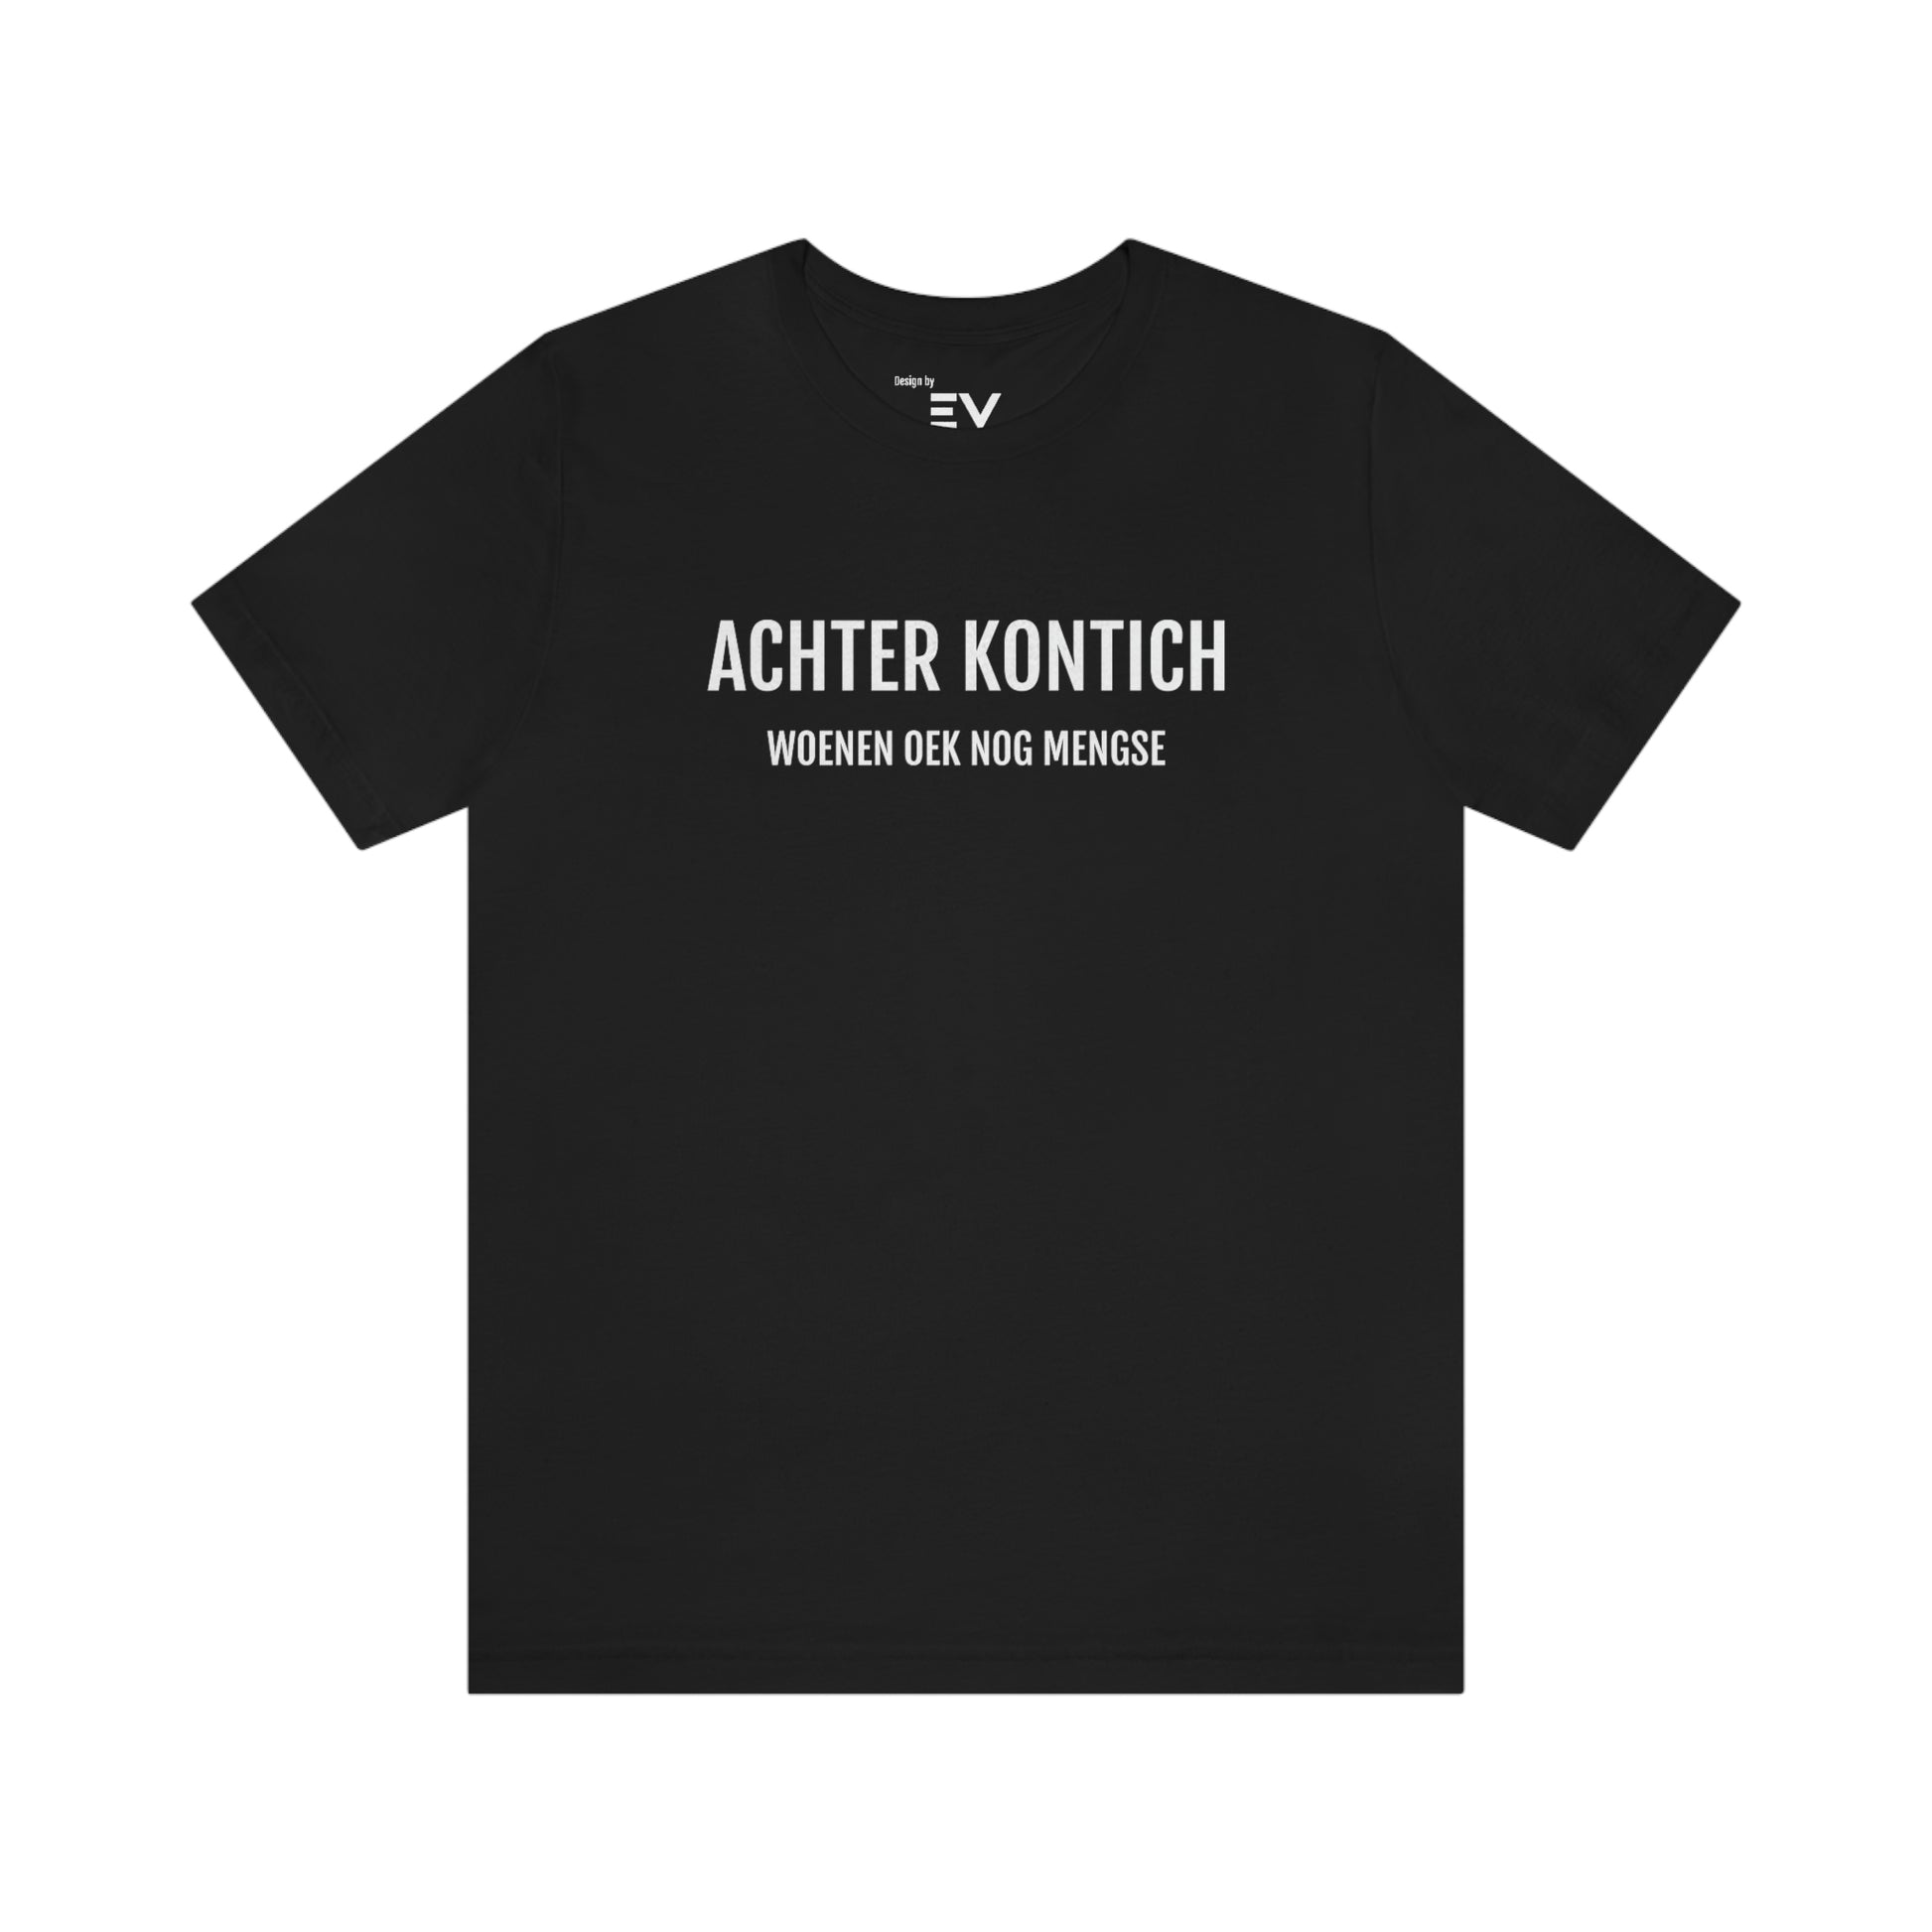 T-shirt in Antwerps dialect in zwart en wit